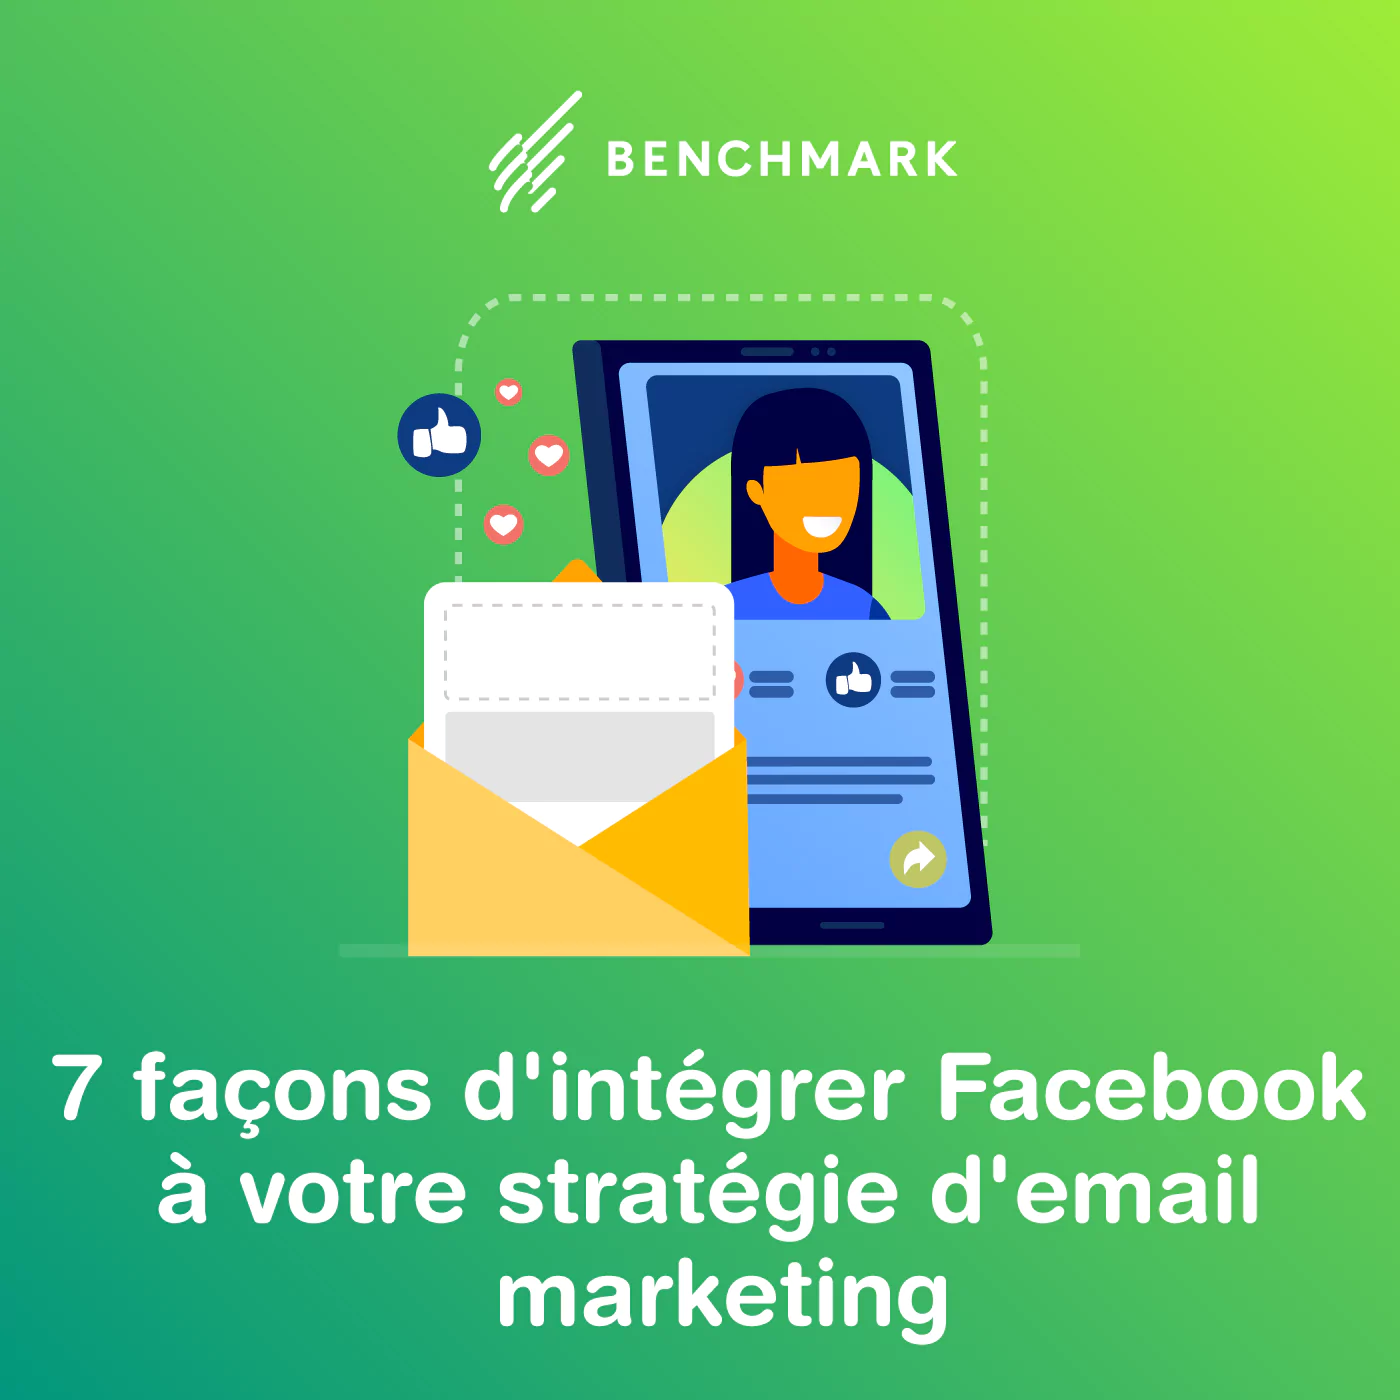 integrer facebook dans l'emailing - image illustrative de l'article de benchmark email